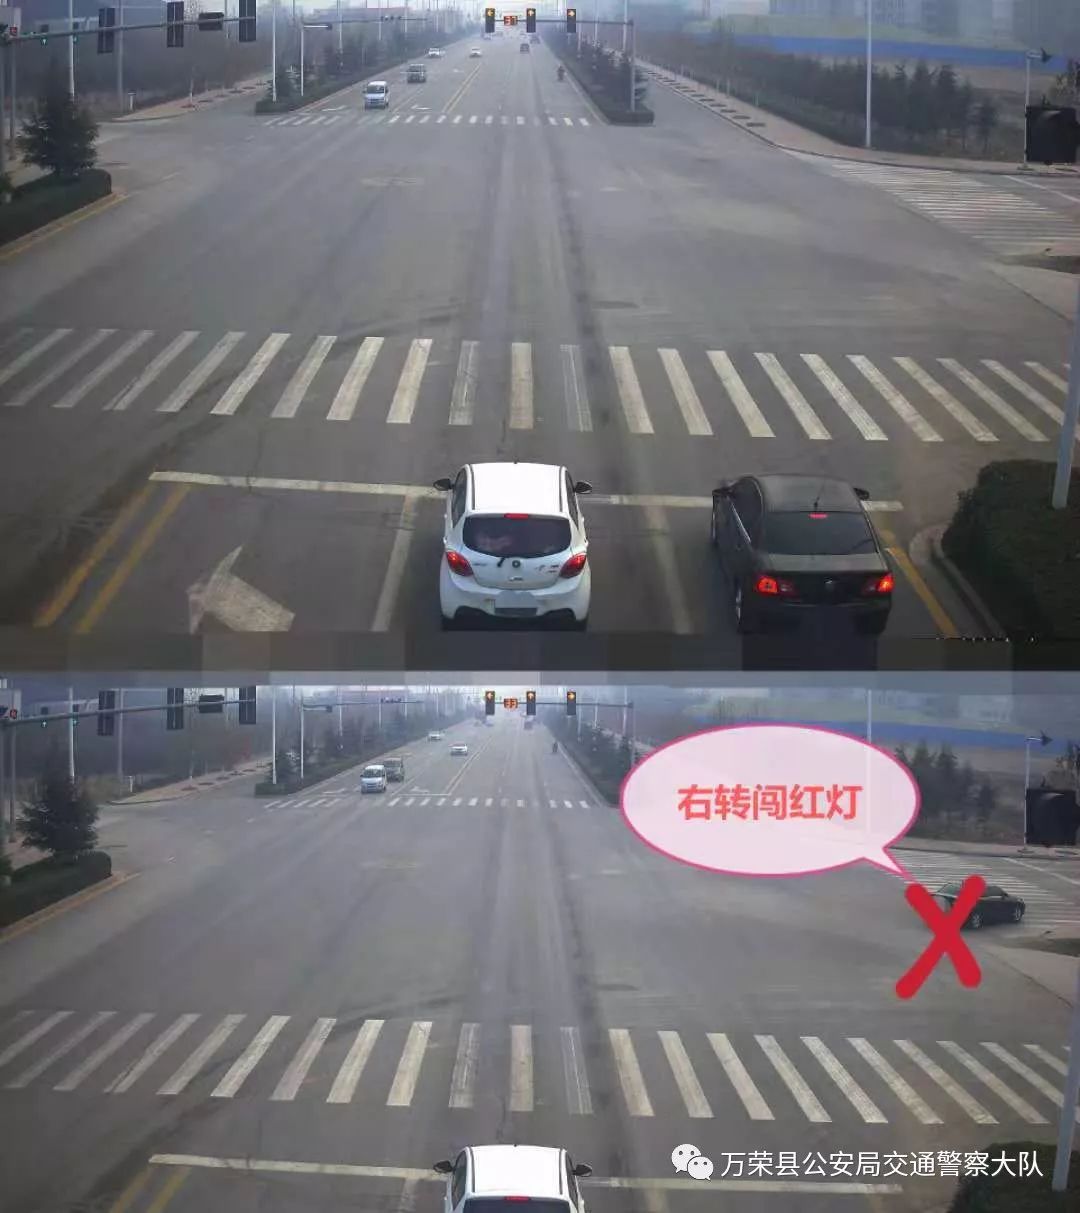 咨询车辆在万荣县十字路口红绿灯处为何右转也会被抓拍,没有闯红灯也